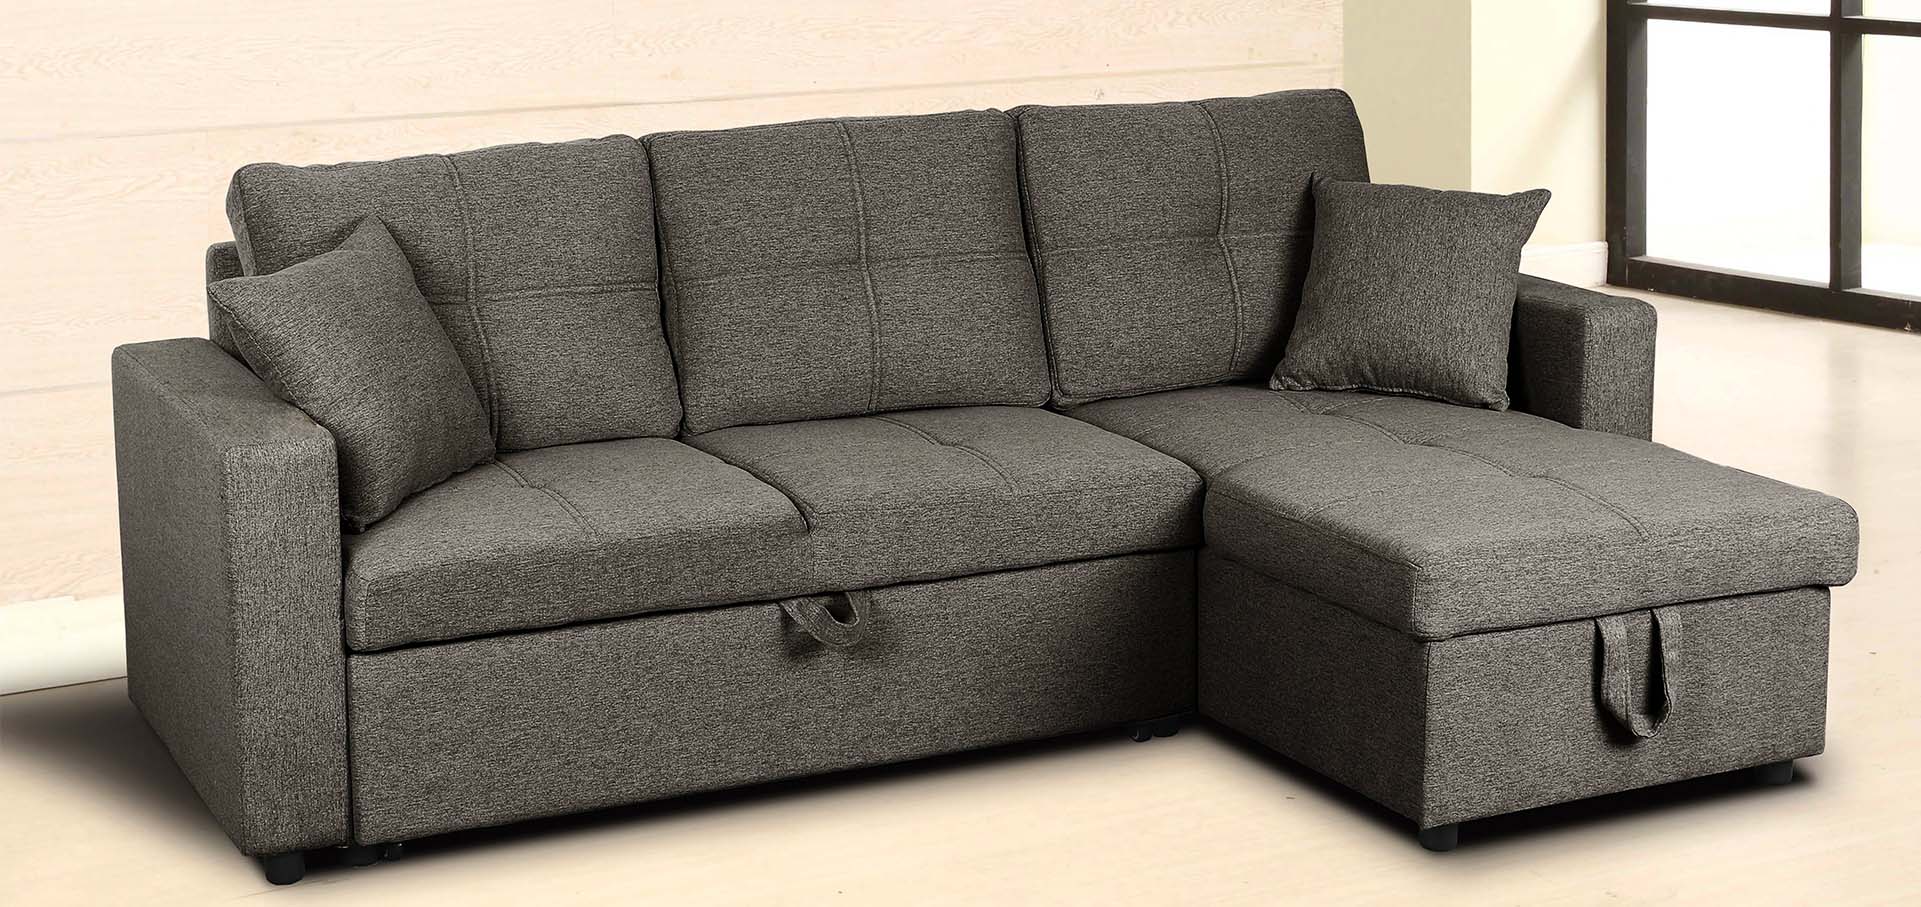 ¿Cómo hacer un sofá cama más cómodo?